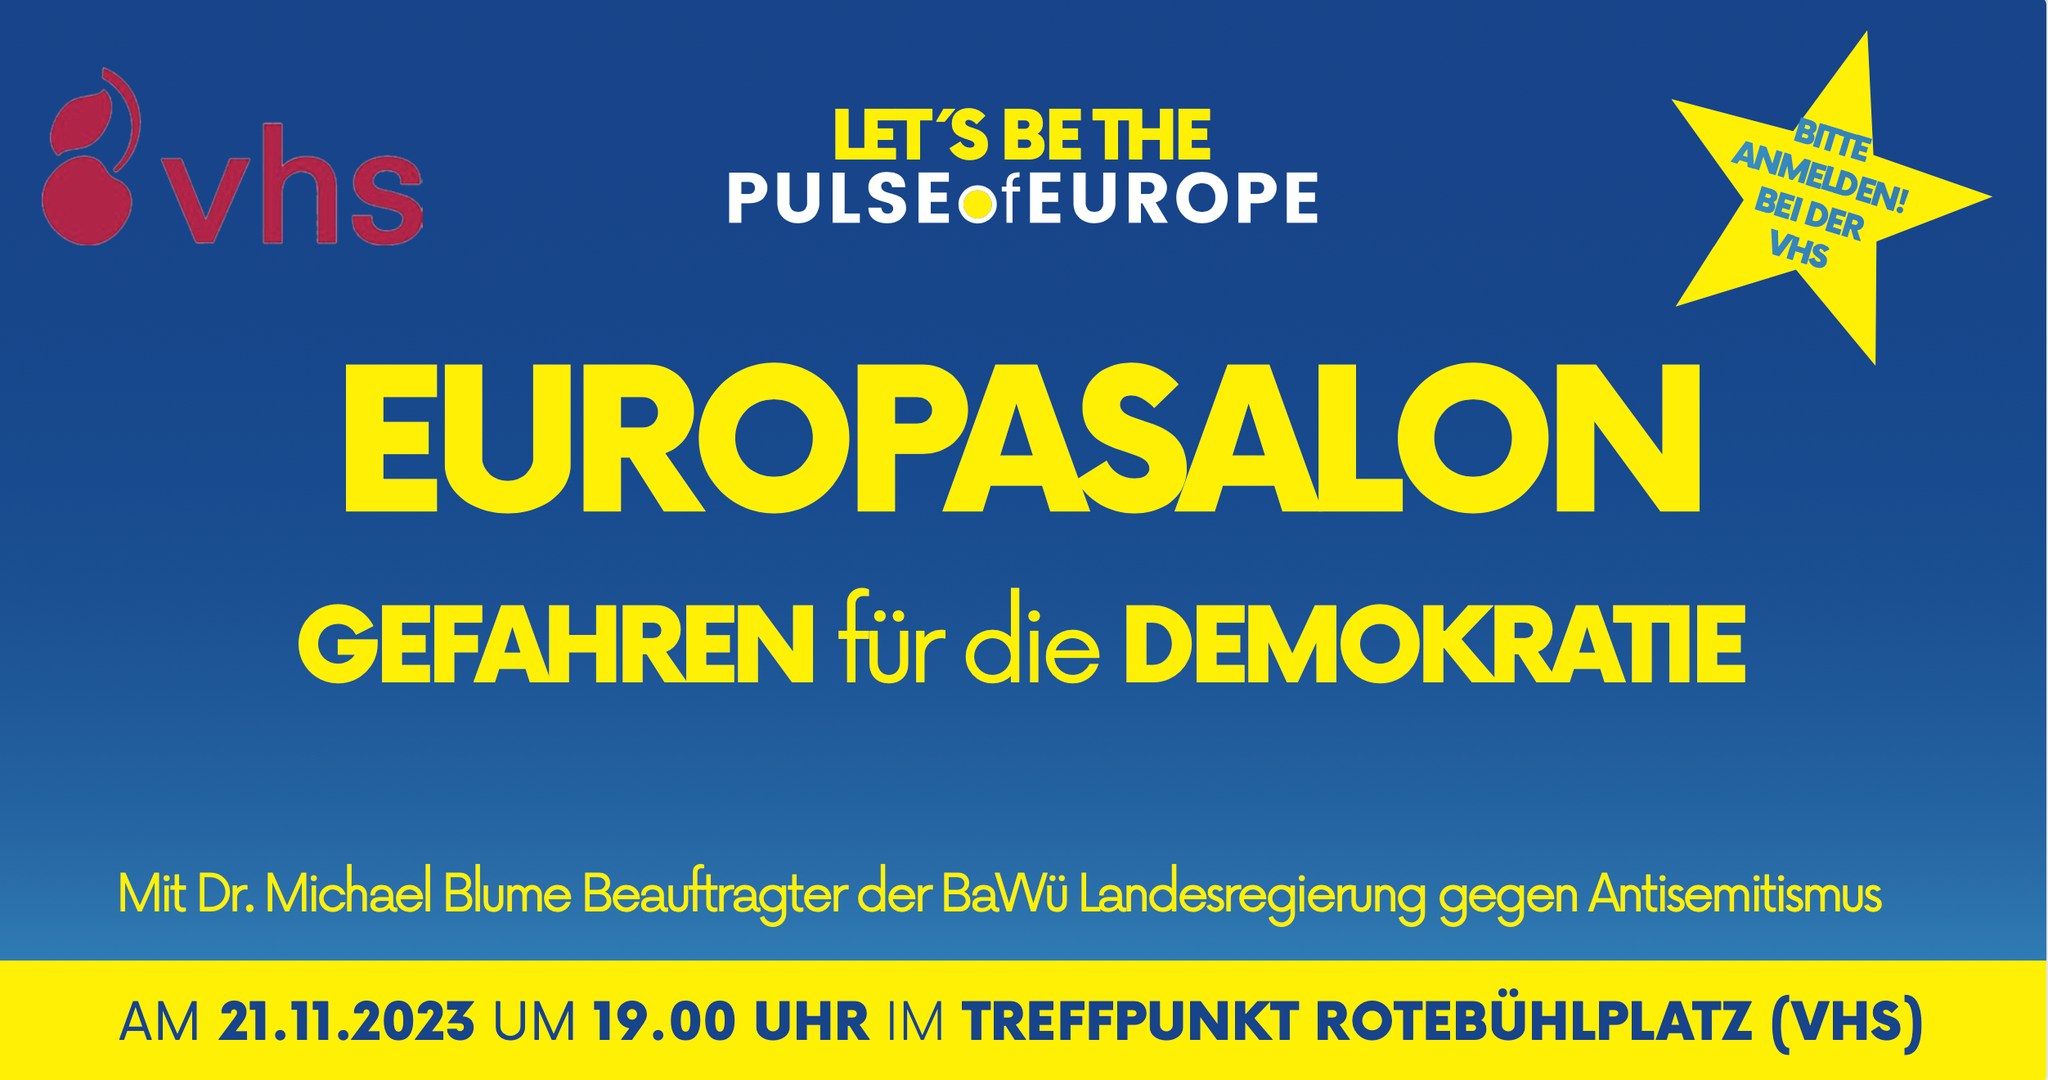 PoE Stuttgart: Europasalon “Gefahren für die Demokratie”